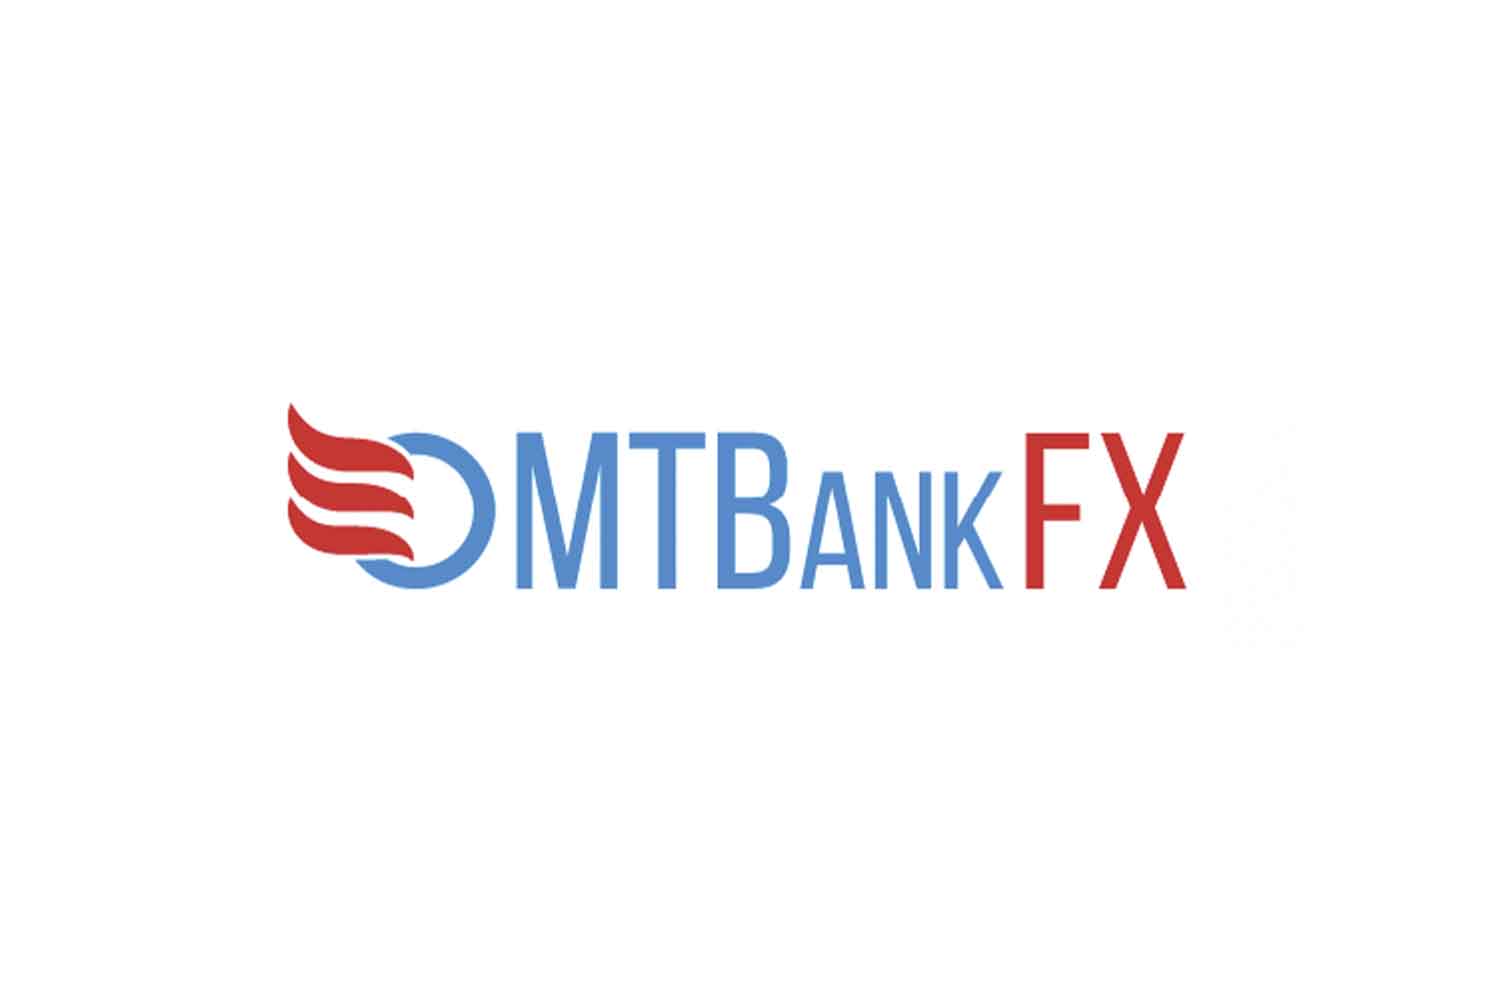 Отзывы о MTBankFX и обзор условий трейдинга с брокером